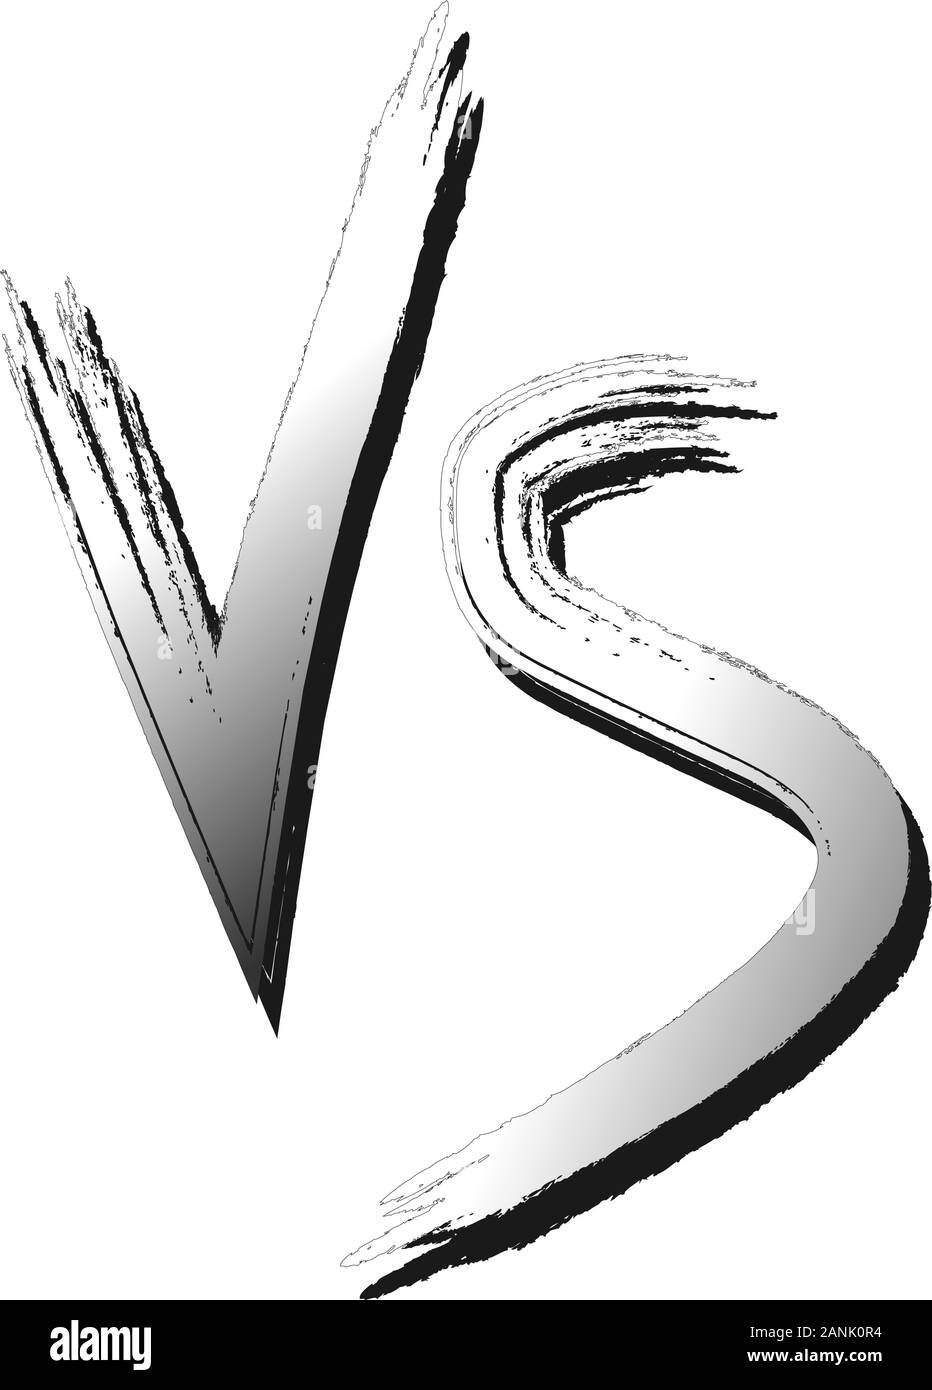 VS schreiben Logo, versus Emblem V und S zusammen isoliert GRUNGE Symbol. Kombination zwei VS schreiben Logo, versus Emblem V und S zusammen isoliert Flachbild Symbol Vektor Stock Vektor